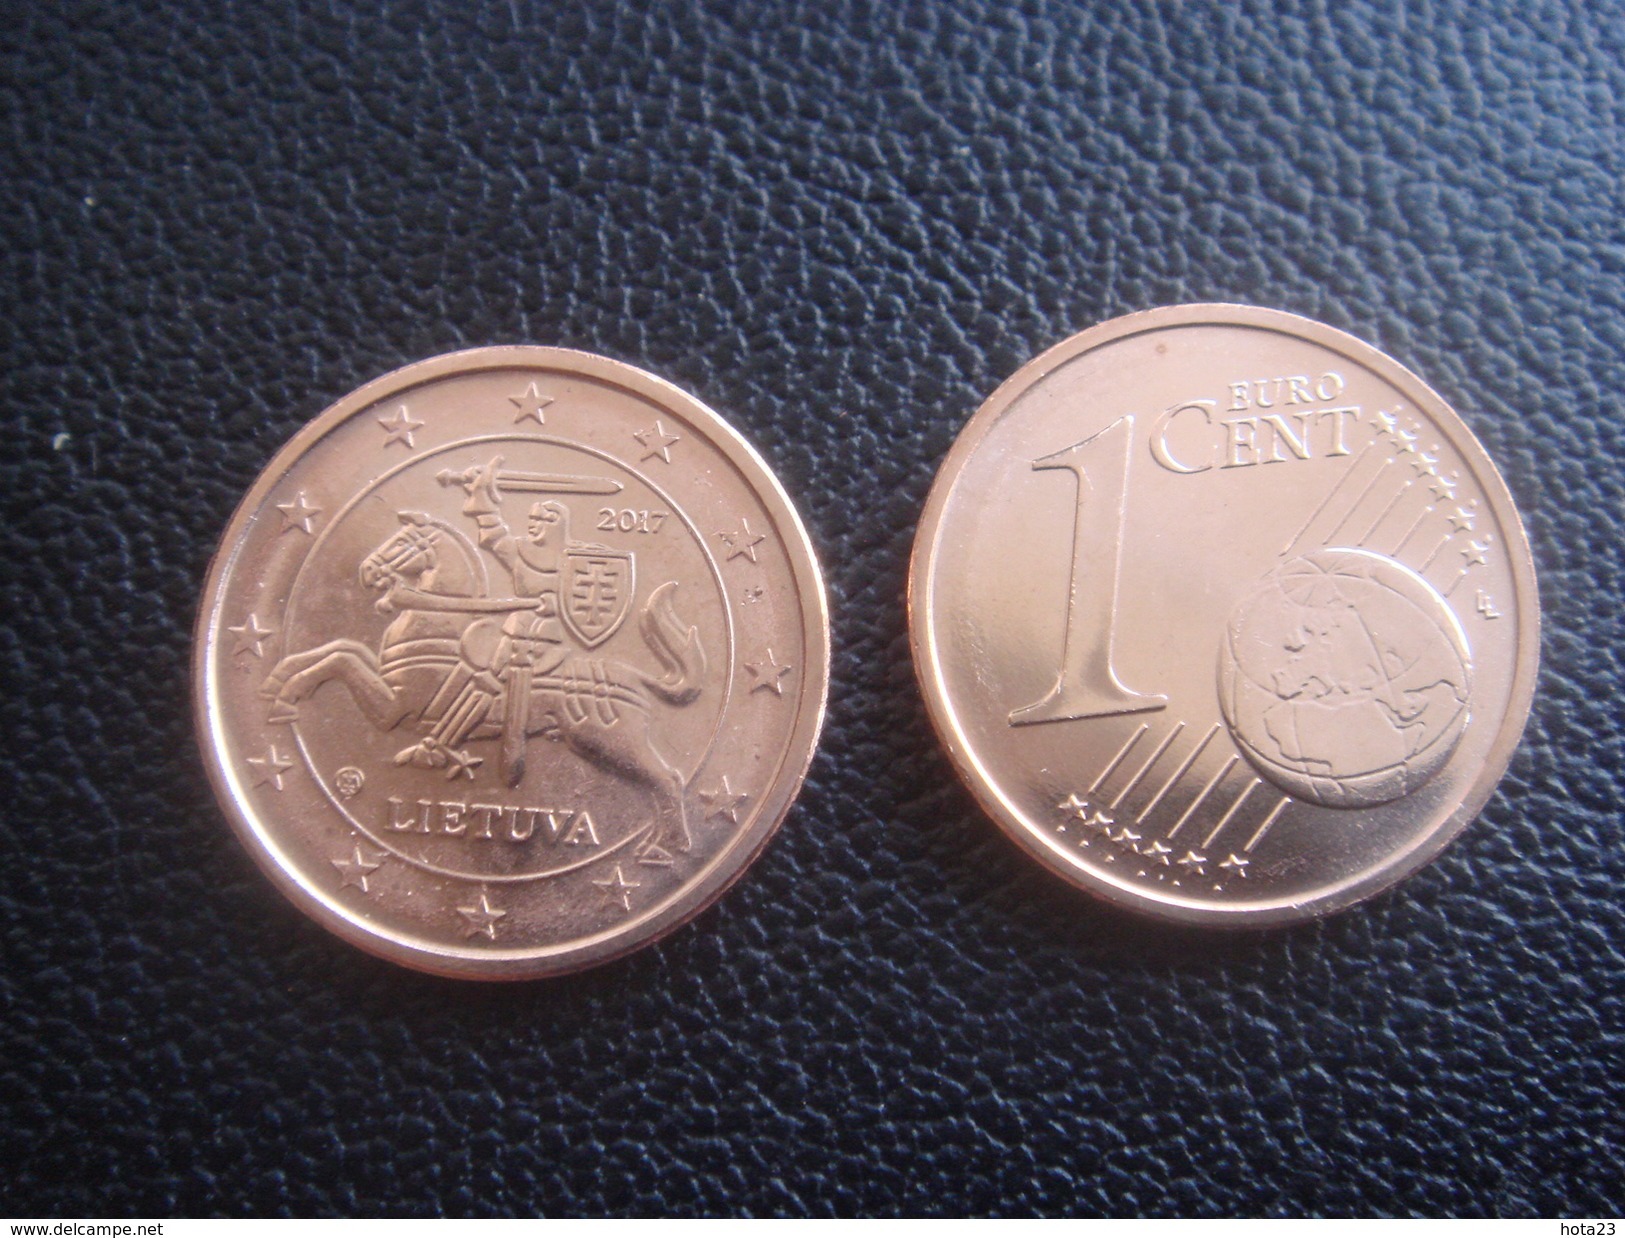 Neu Lithuania Litauen Lietuva  1 Euro Cent 2017  Münzen Aus Rolle  UNC - Lituanie